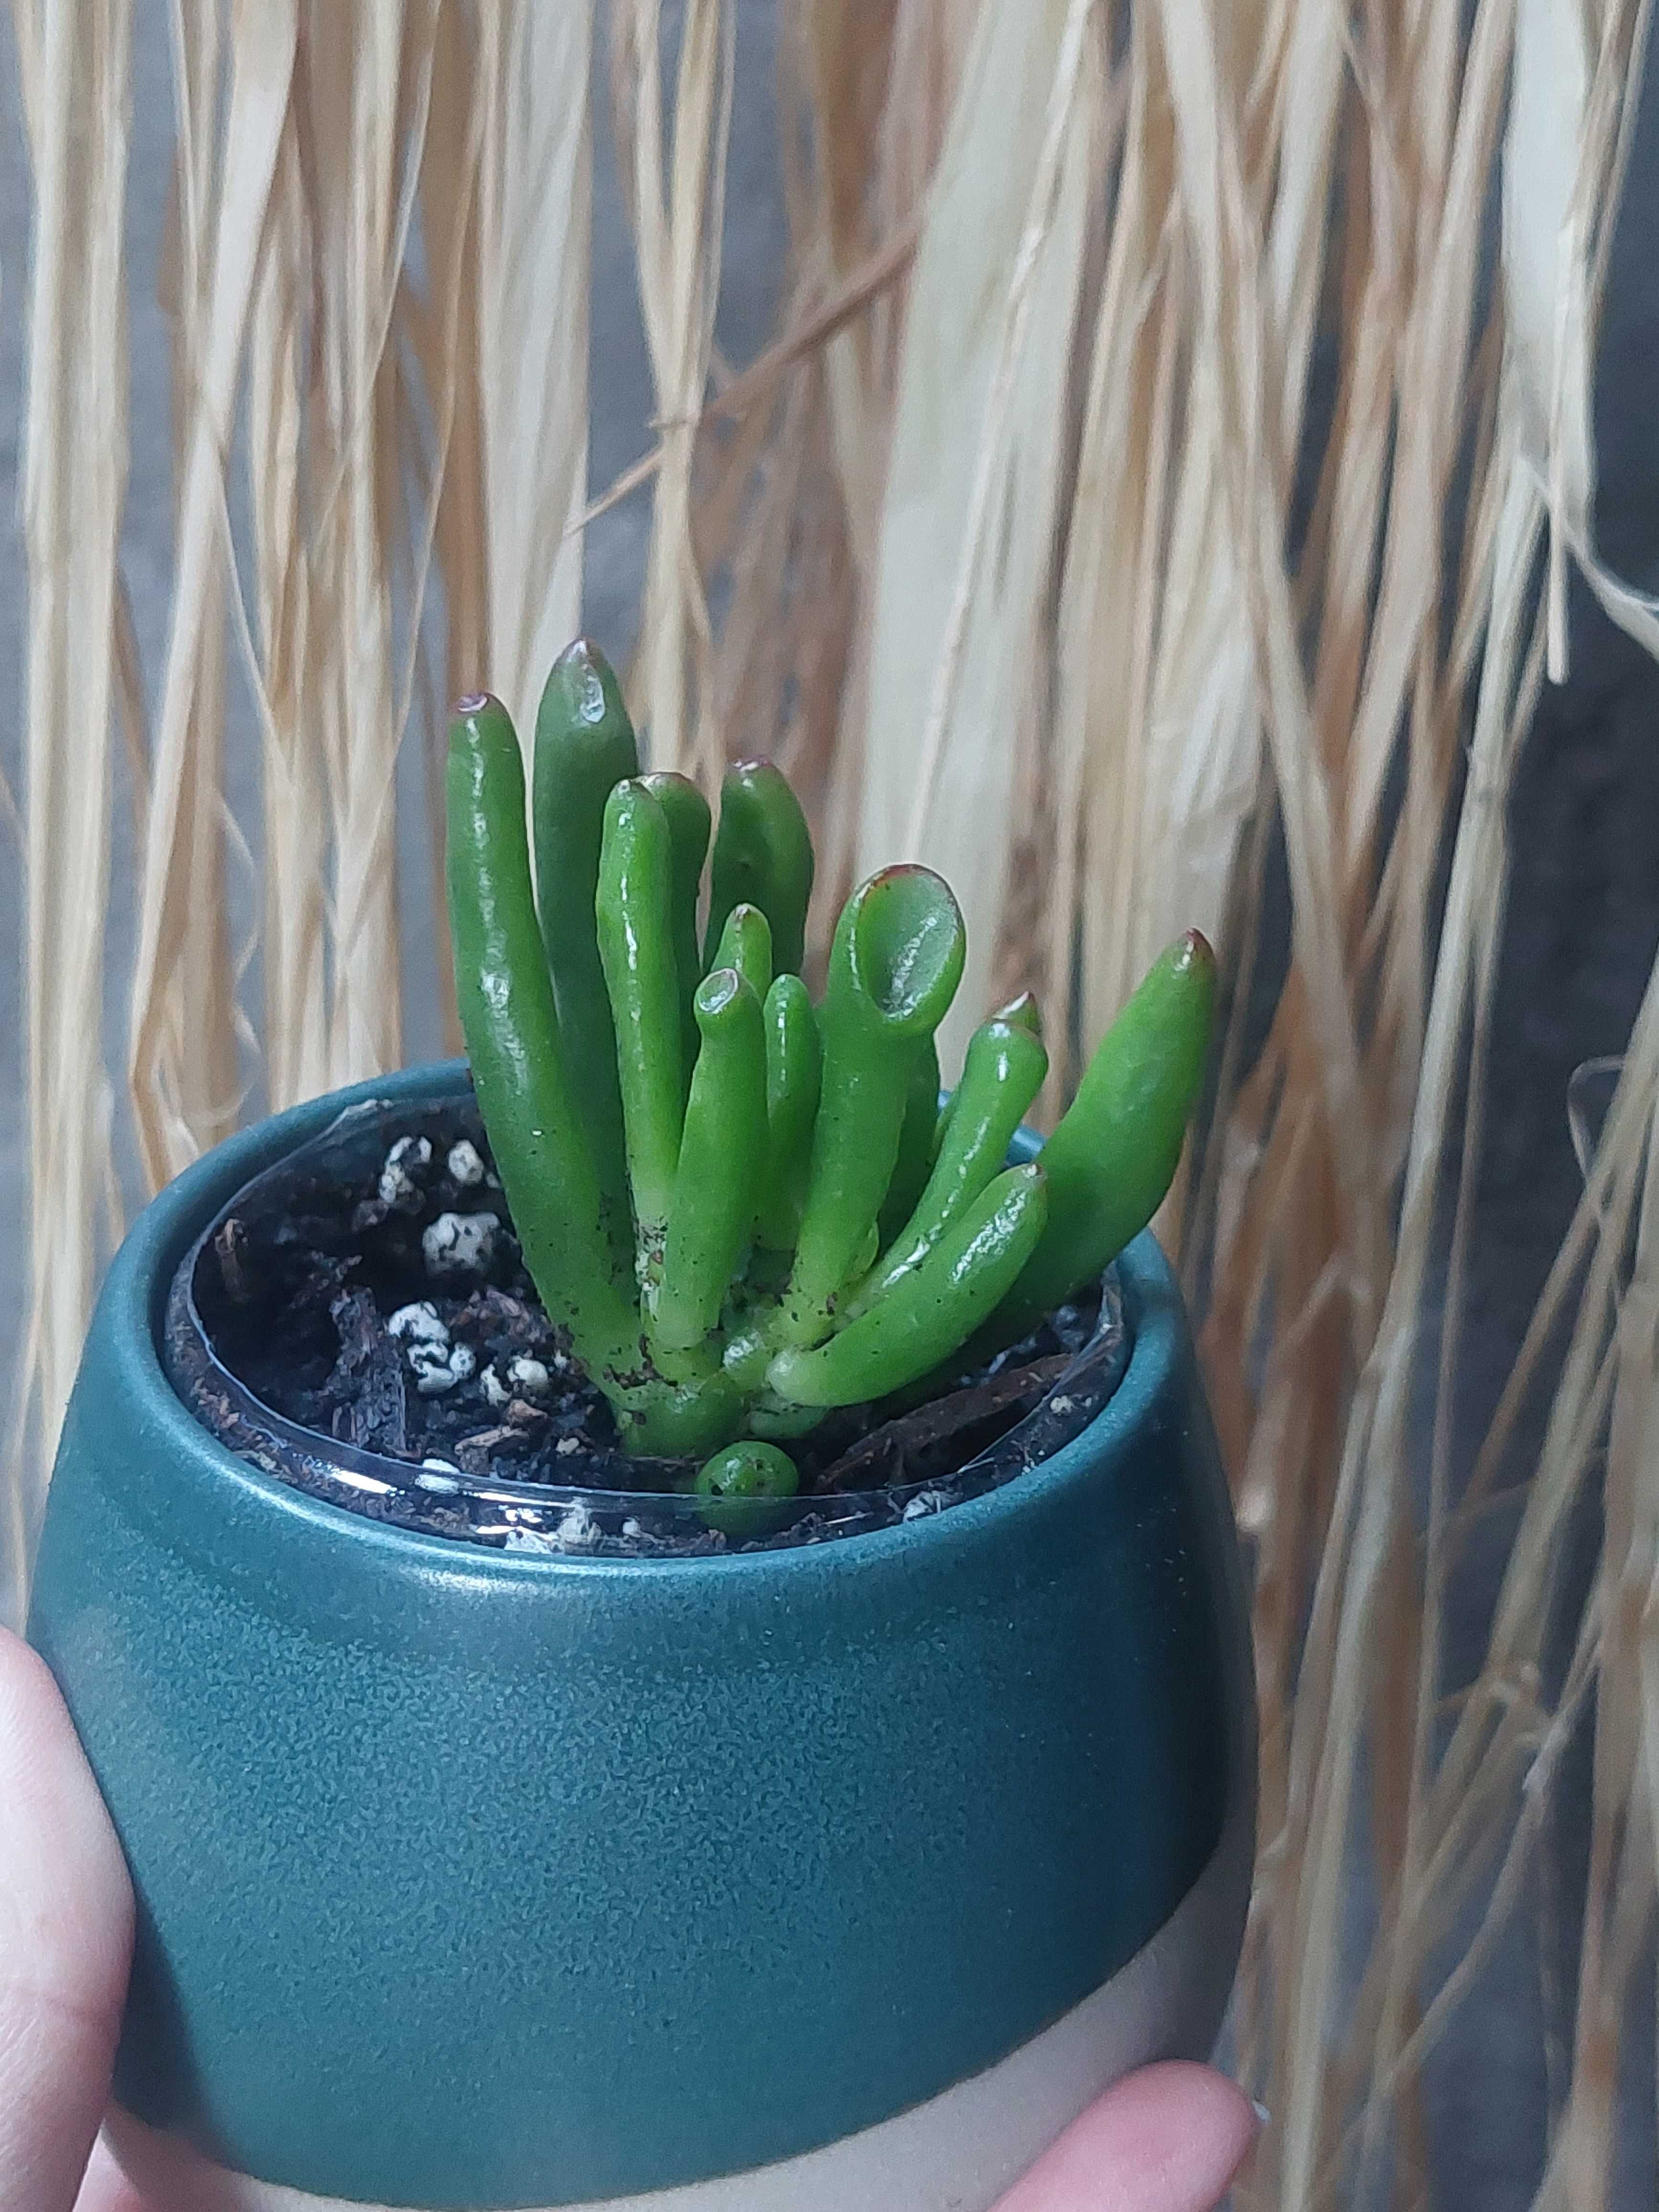 [Planta] Suculenta Crassula Ovata 'Gollum' - Orelha de Shrek